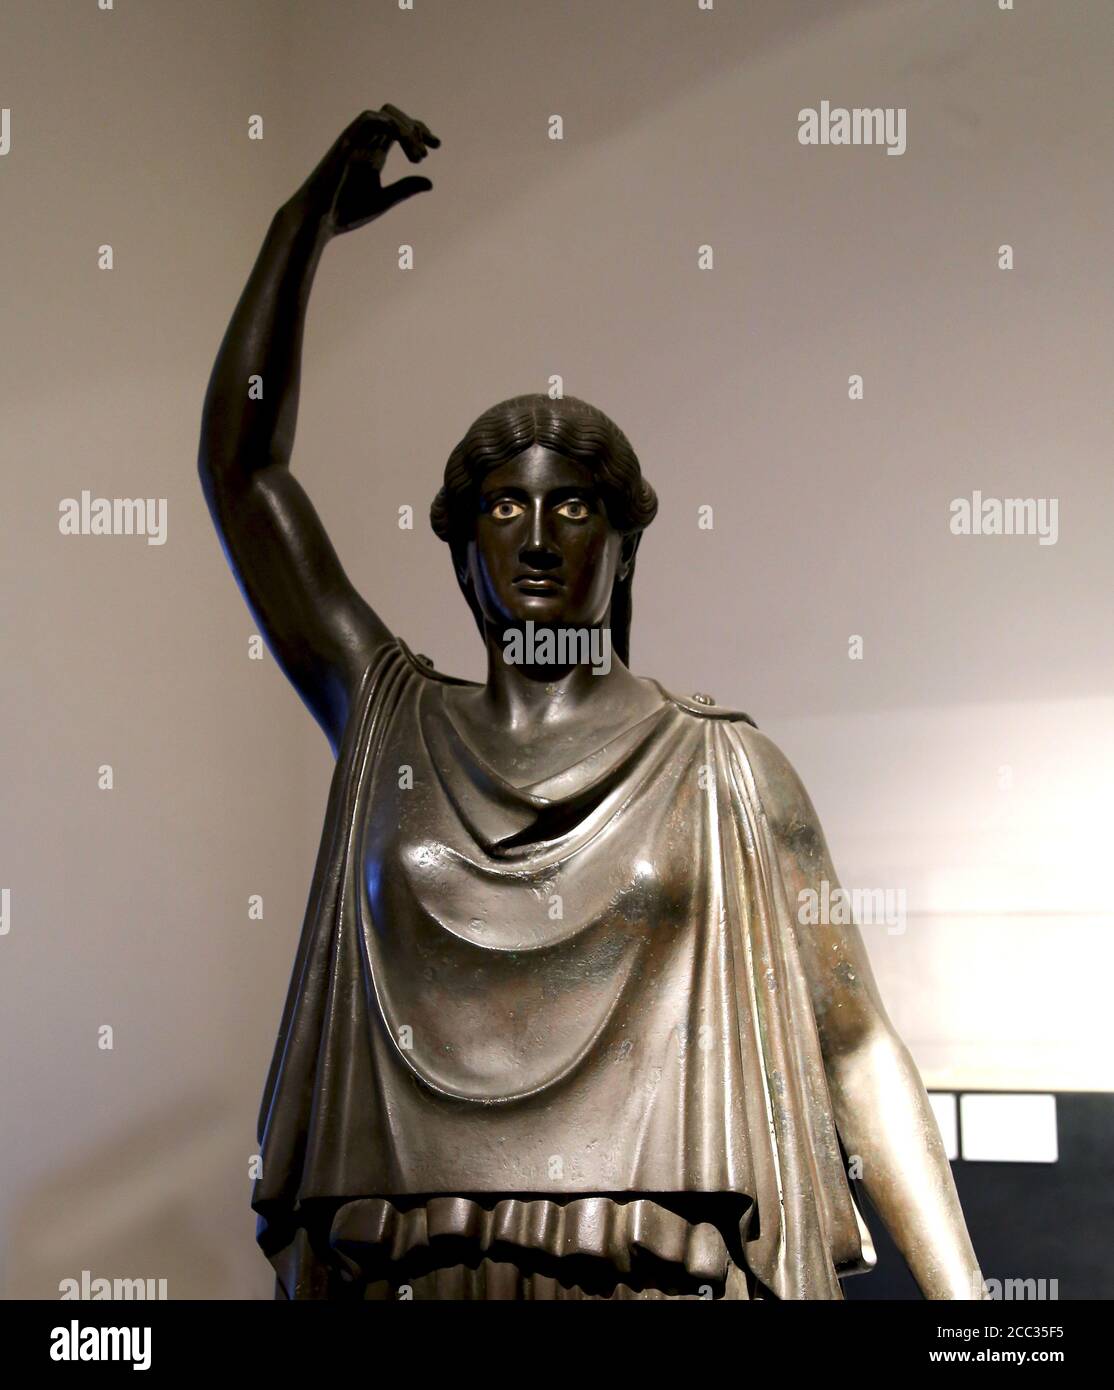 Bailarina (danaid) estatua de bronce romano de la Villa dei Papyri. Detalle. Siglo I a.C. Museo Arqueológico de Nápoles, Italia. Foto de stock